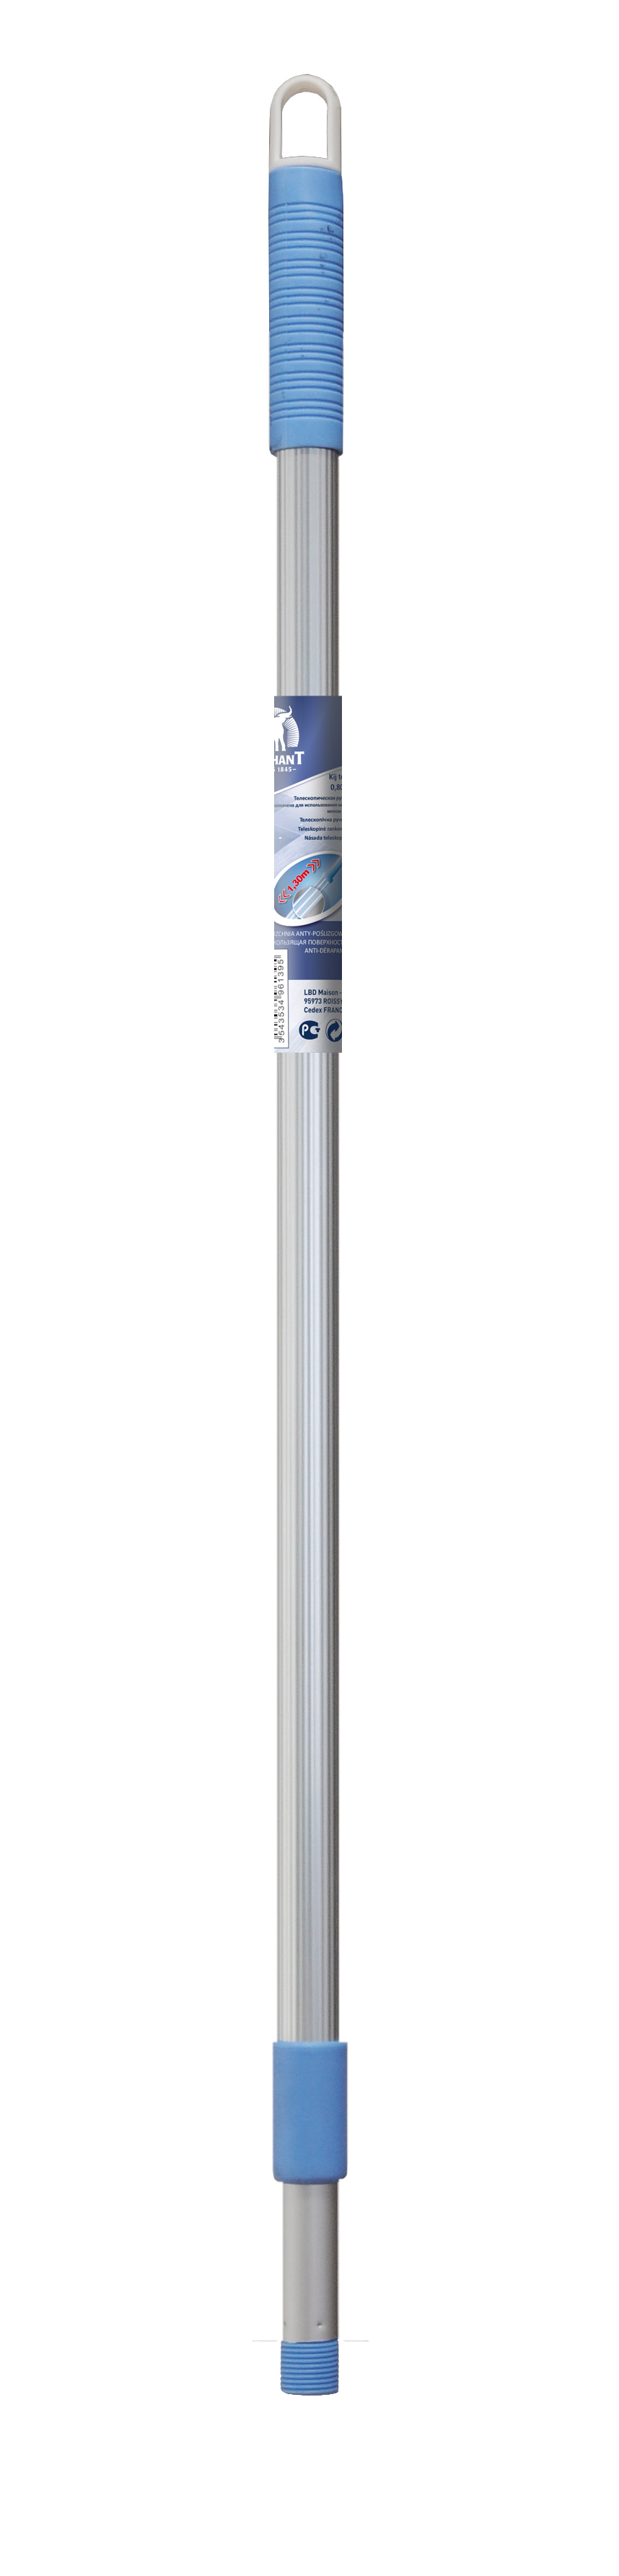 Ручка для швабры телескопическая (160 см), размер 160 см